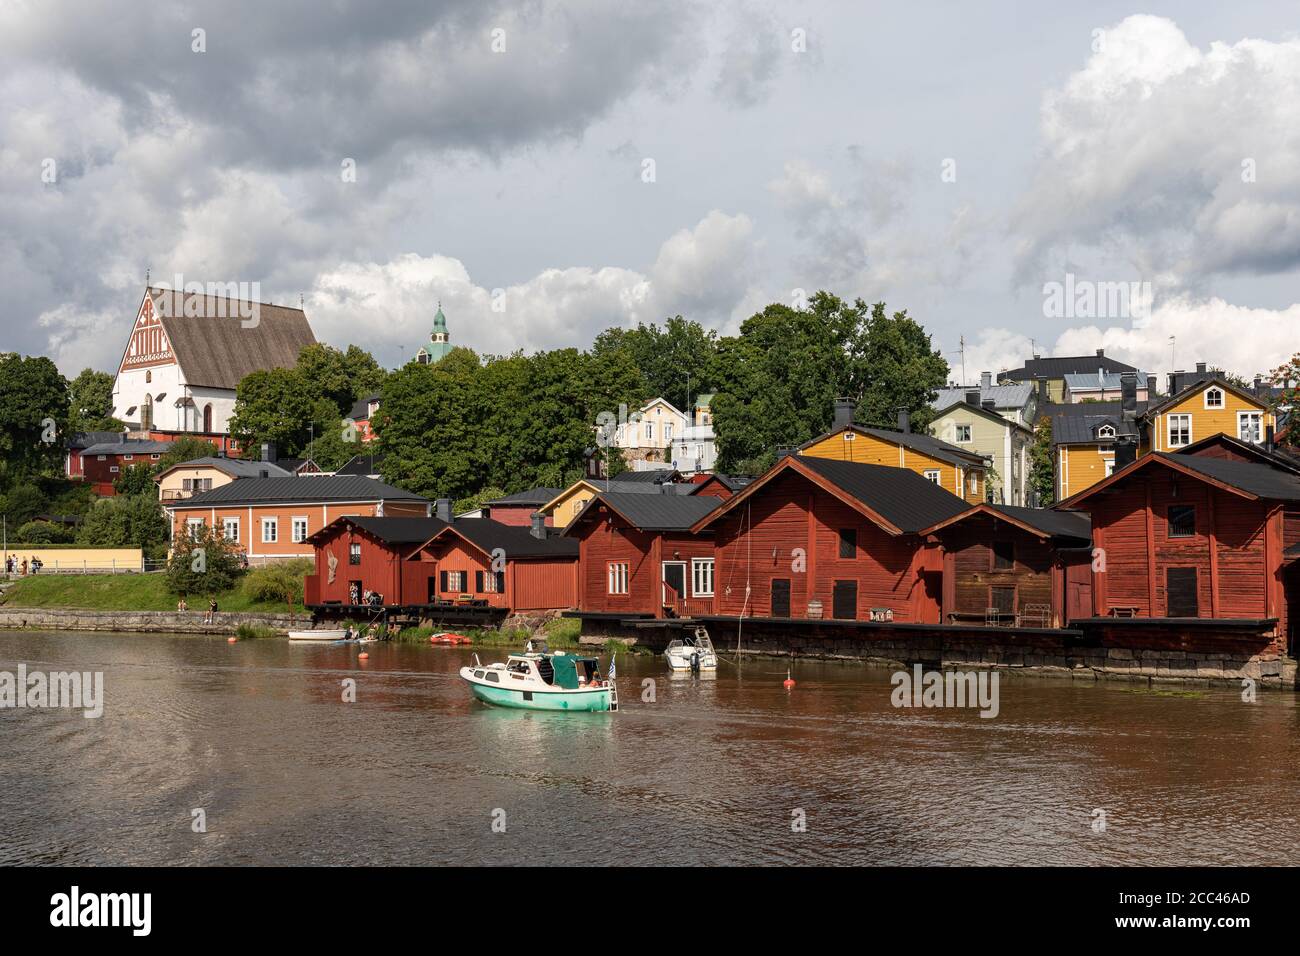 Rivière Porvoonjoki avec bâtiments de stockage en bois de la vieille ville sur les berges et cathédrale médiévale en pierre et en brique en arrière-plan à Porvoo, Finlande Banque D'Images